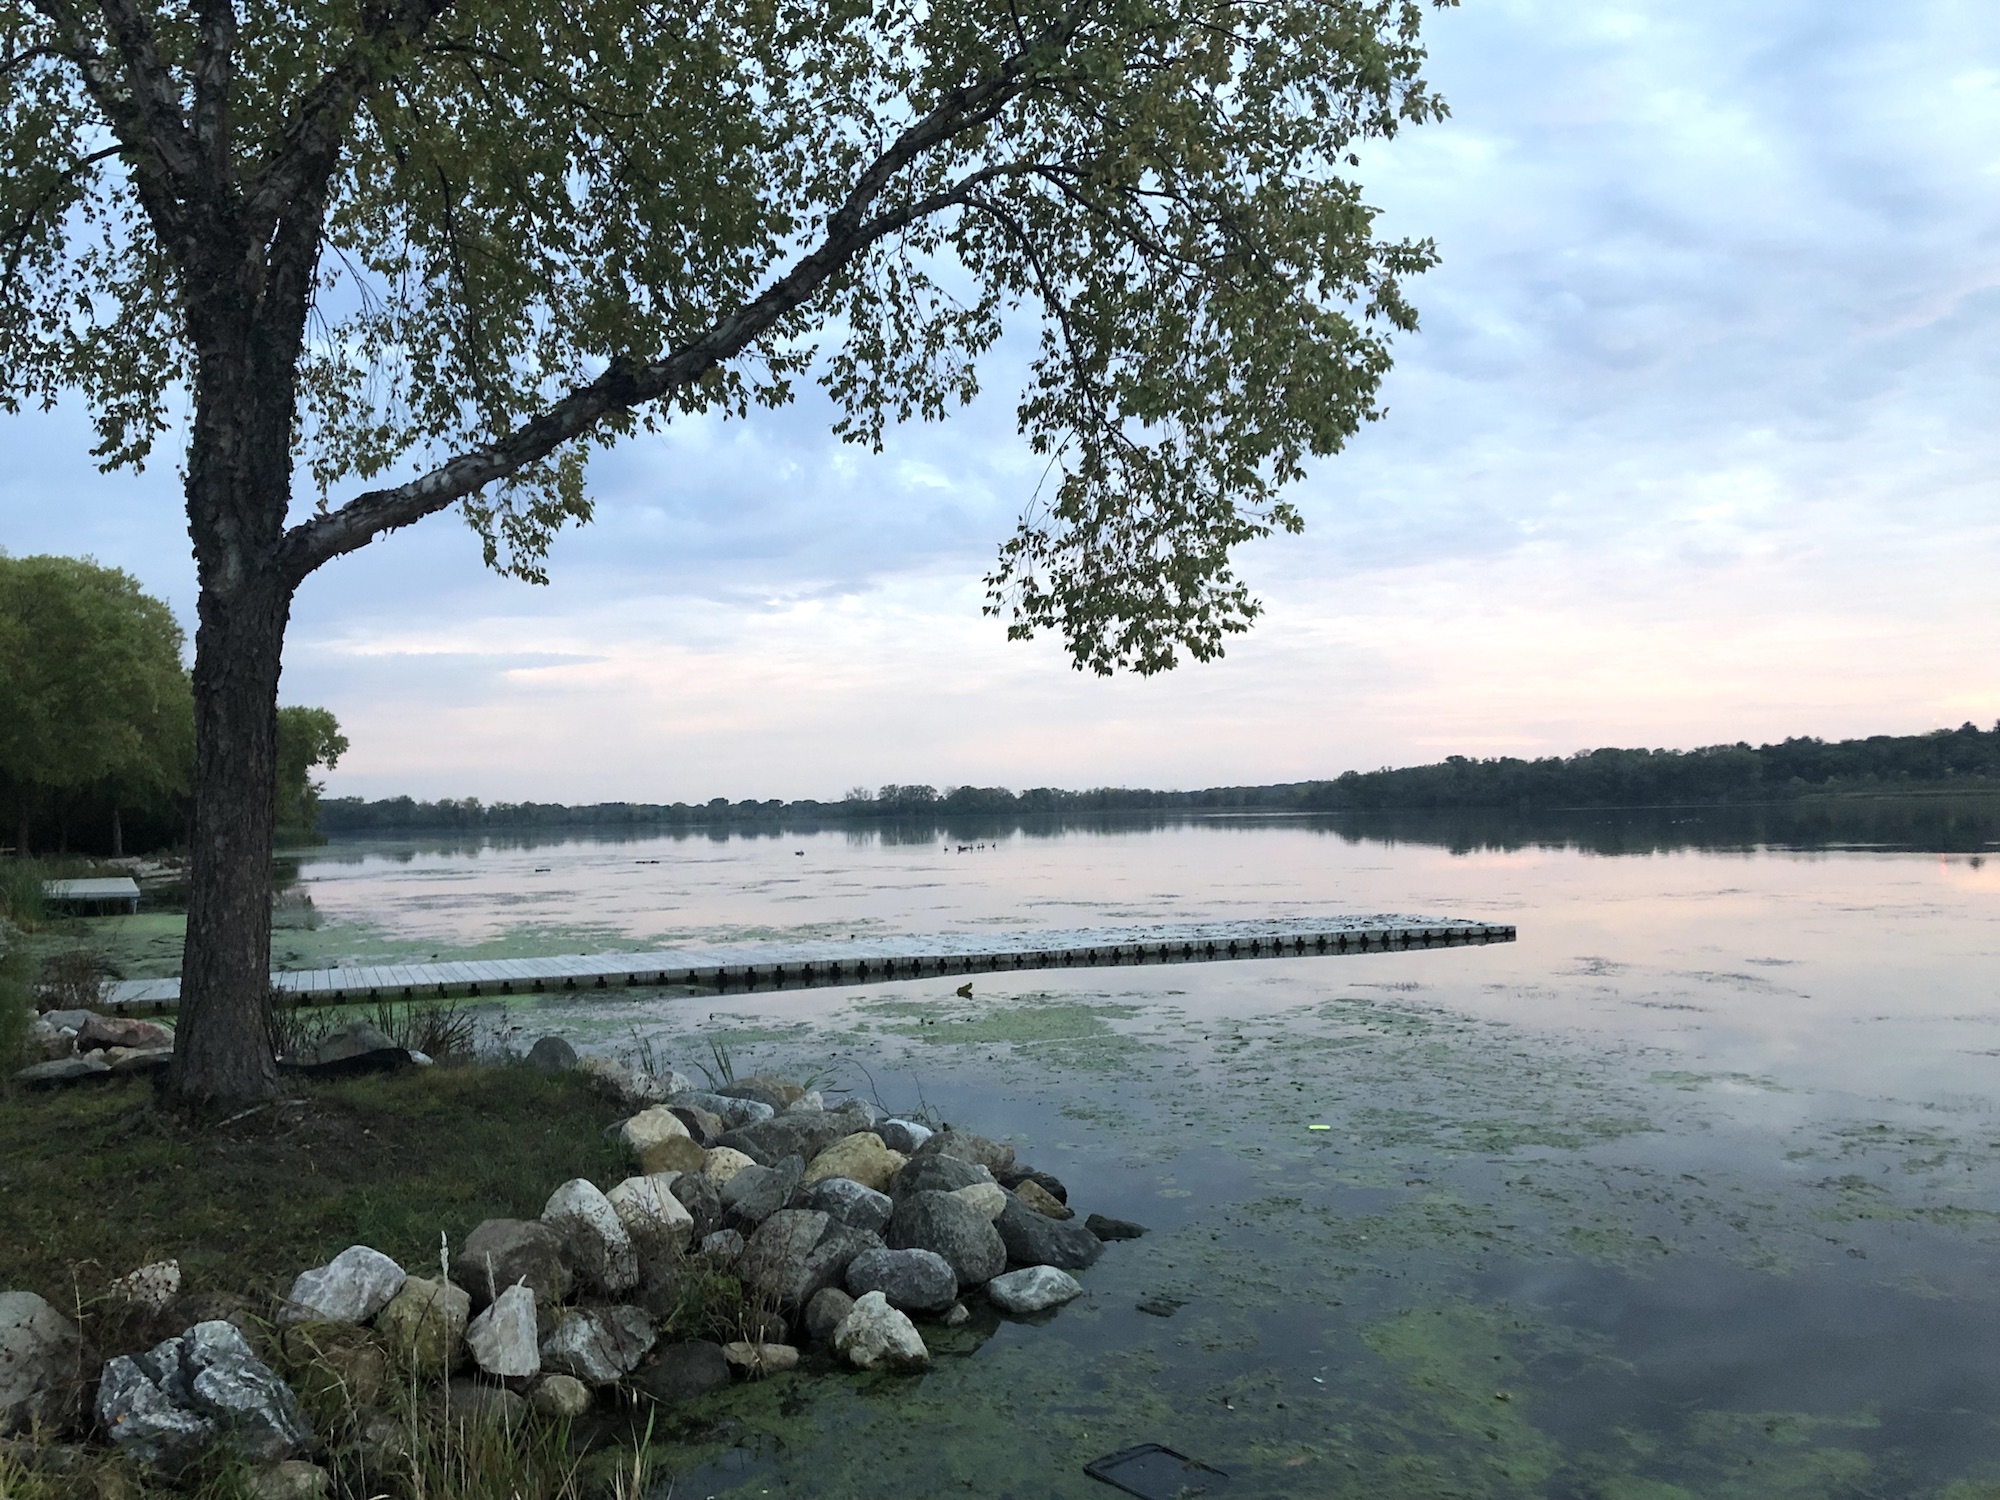 Lake Wingra on October 1, 2019.